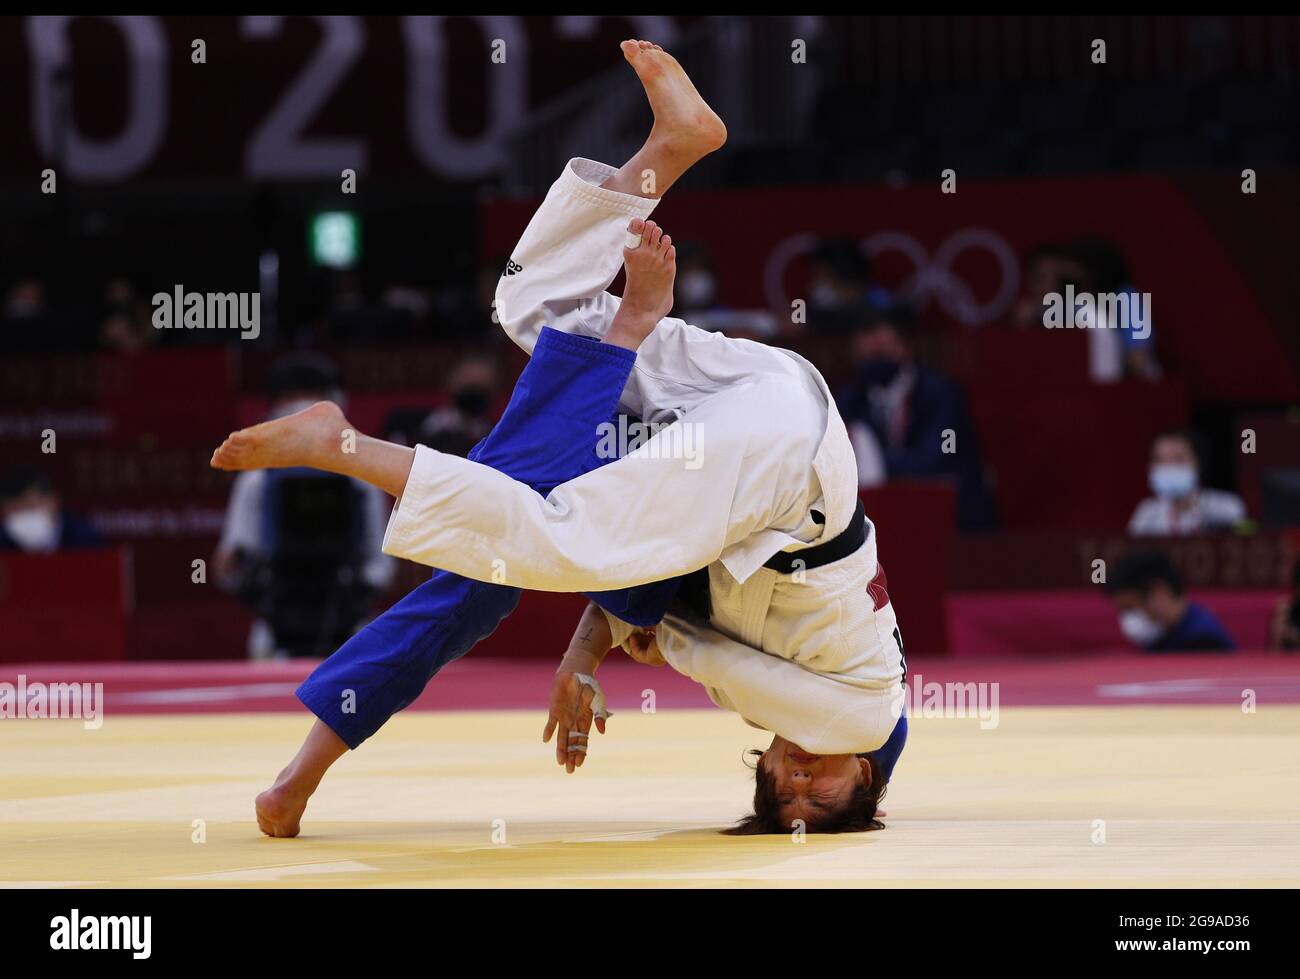 Il Korea's da-Sol Park (bianco) compete contro la Reka Pupp ungherese in una partita femminile di repachage Judo 52kg alle Olimpiadi estive di Tokyo, Giappone, domenica 25 luglio 2021. Foto di Bob strong/UPI. Foto Stock